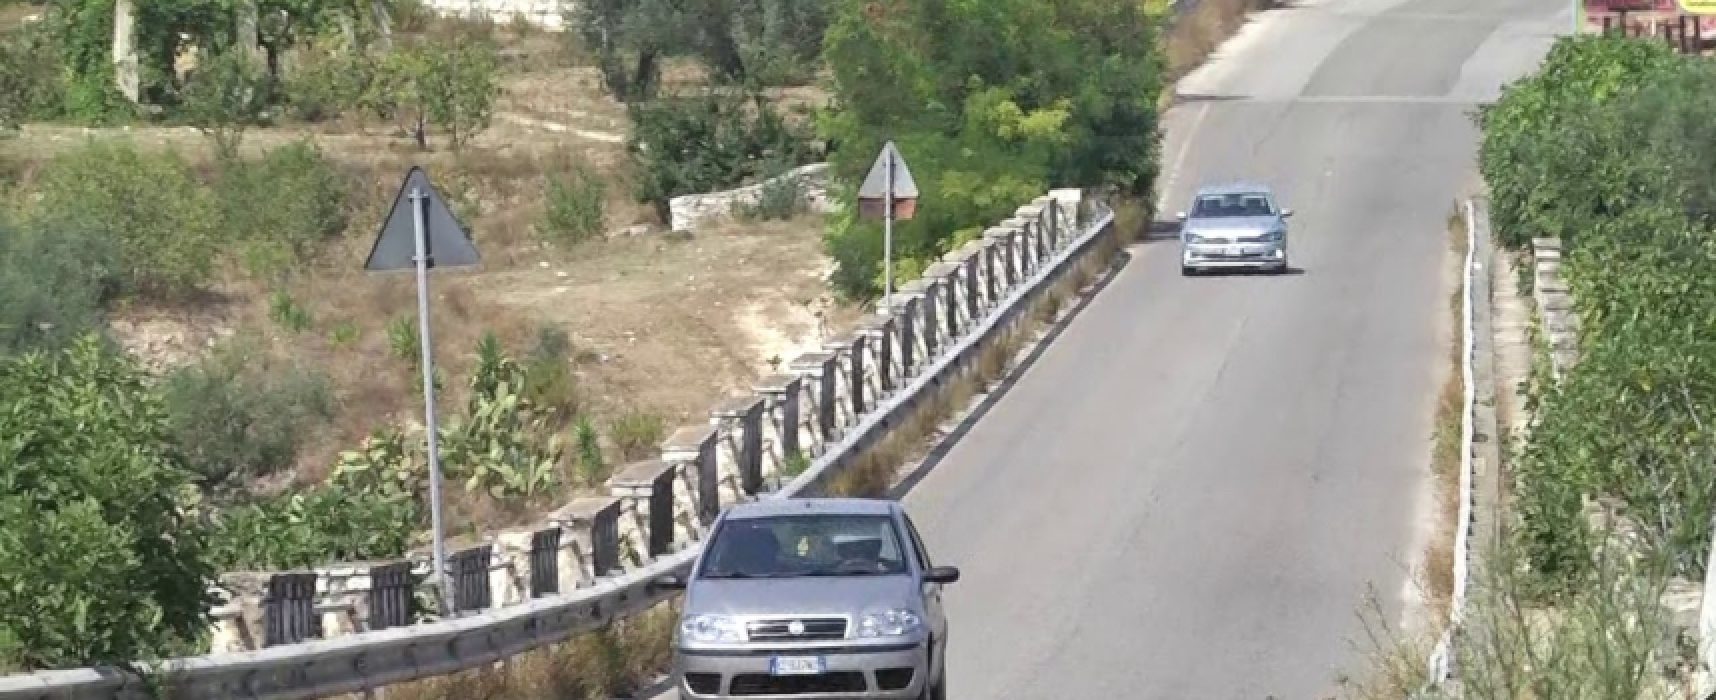 Ponte Lama, limitazioni a circolazione stradale fino a ultimazione dei lavori di messa in sicurezza